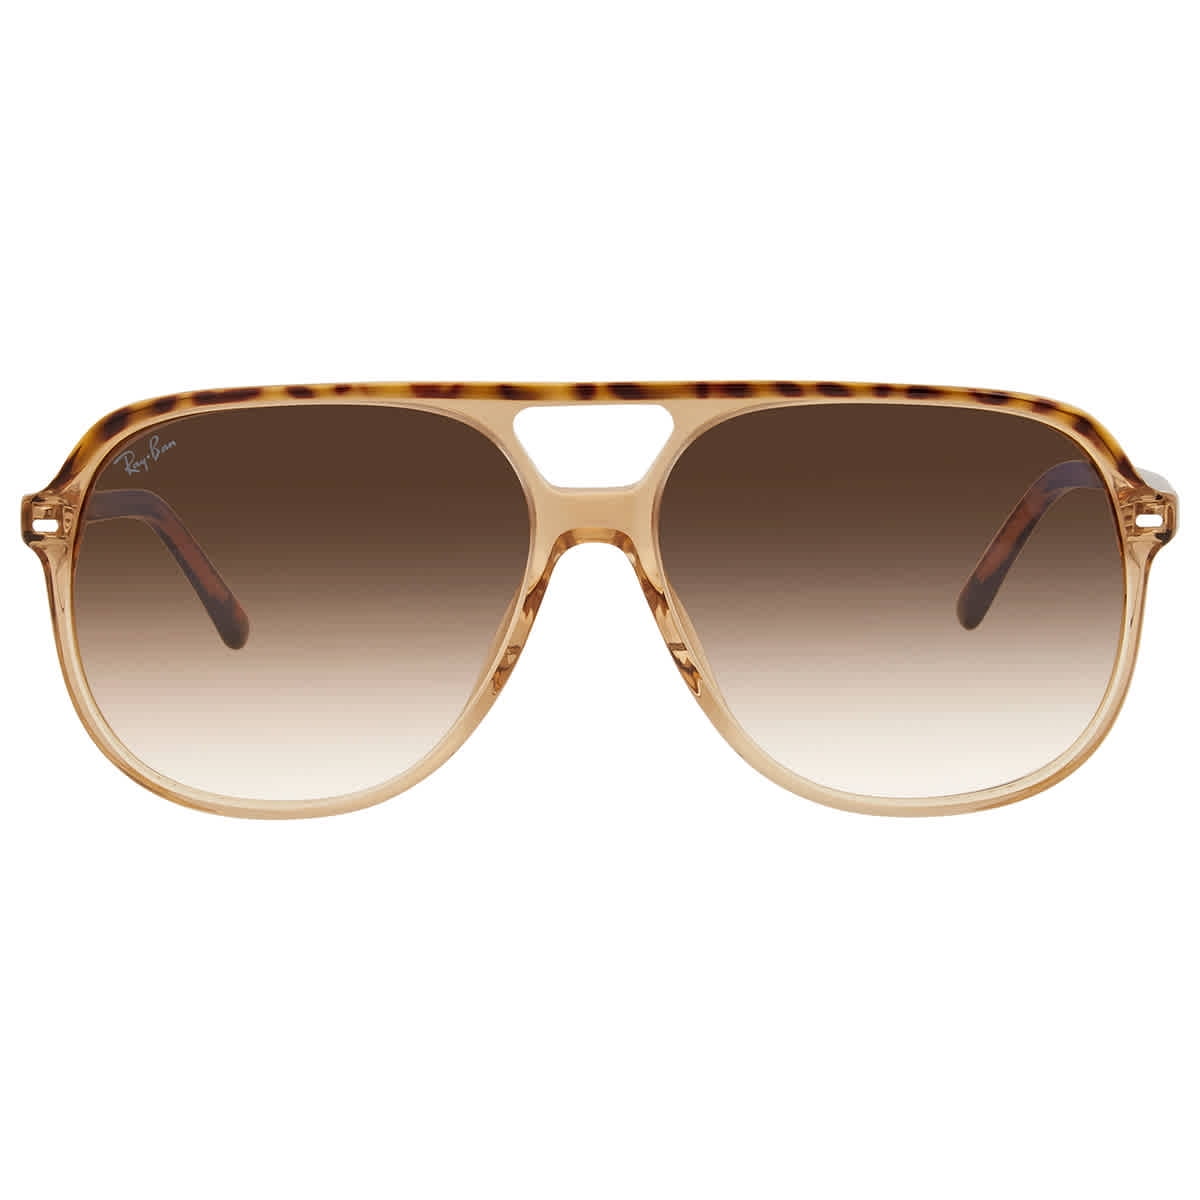 Oakley Feedback Prizm Brown Gradient Aviator Ladies Sunglasses OO4079  407946 59 | eBay